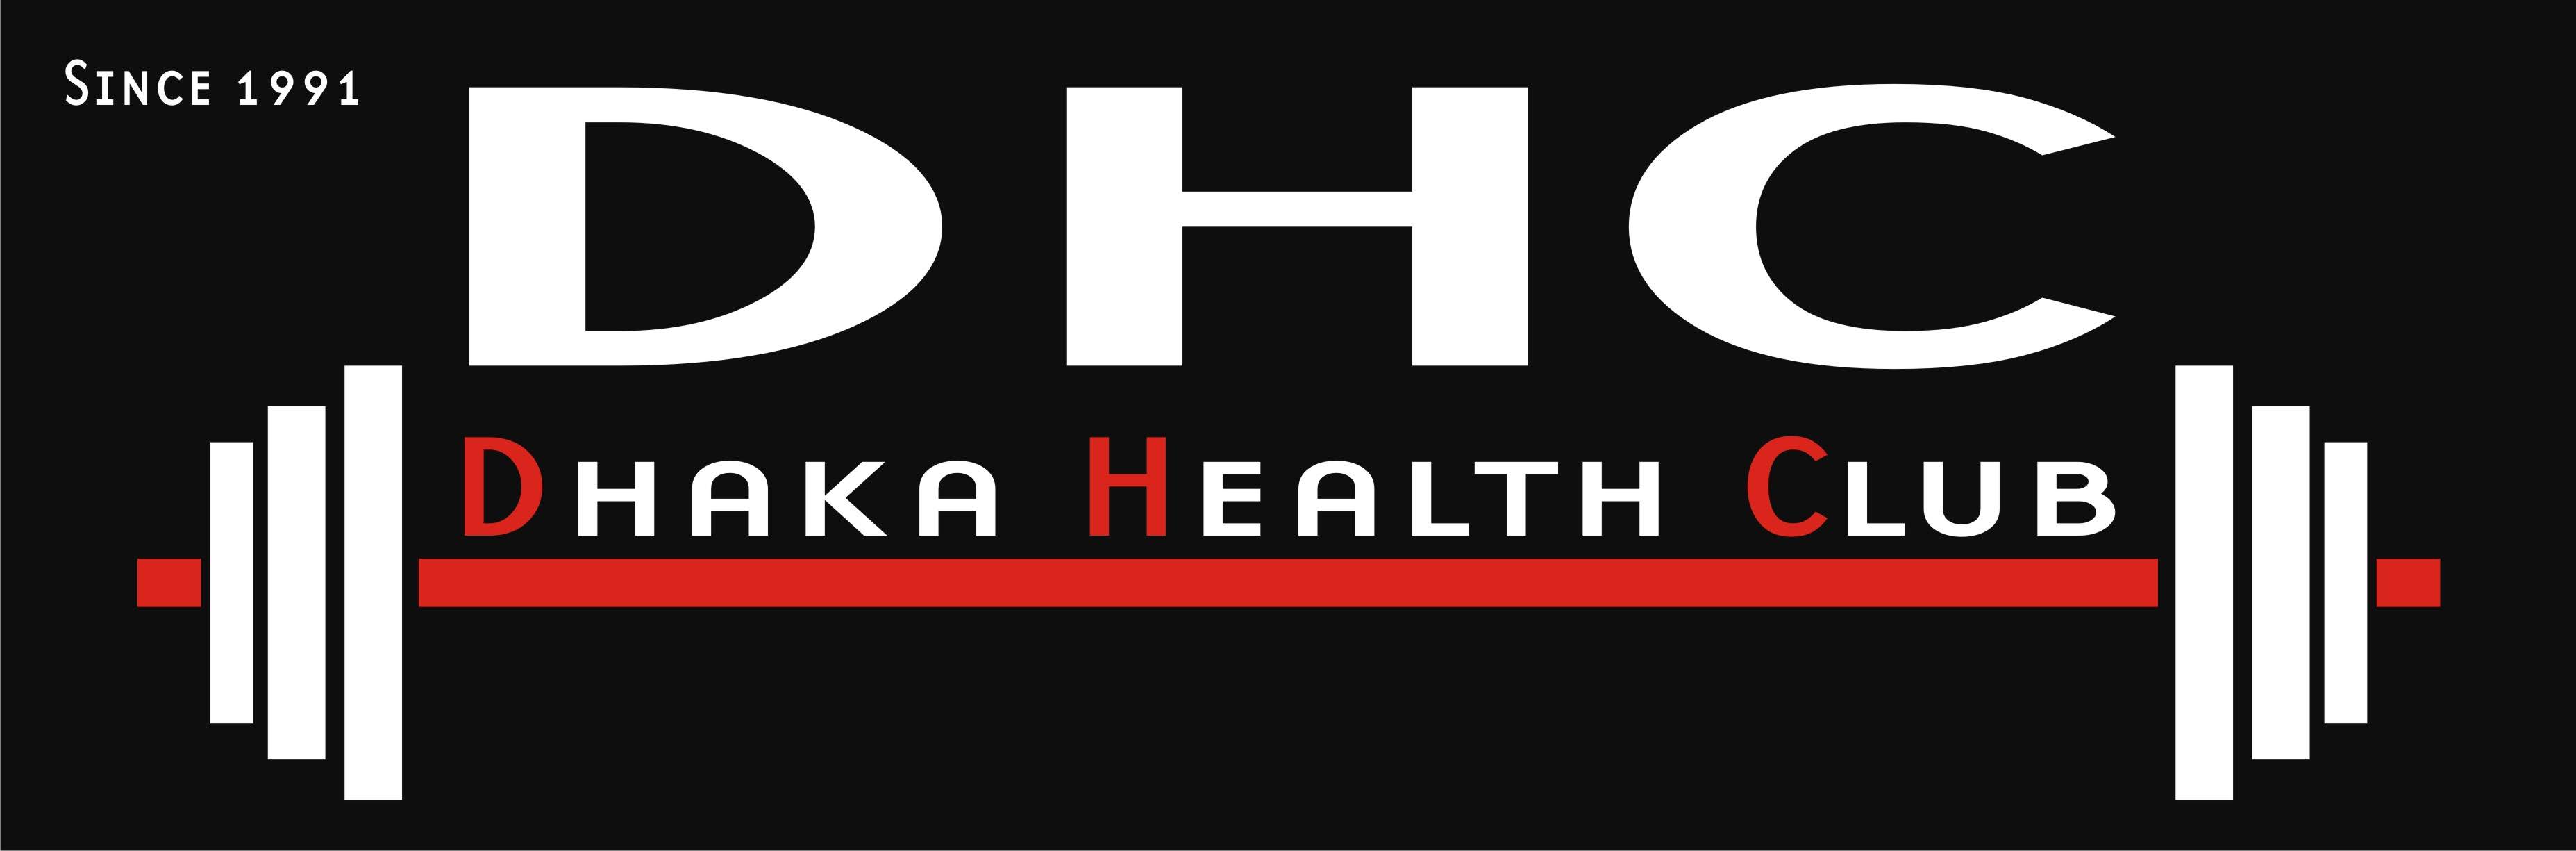 Dhaka health club